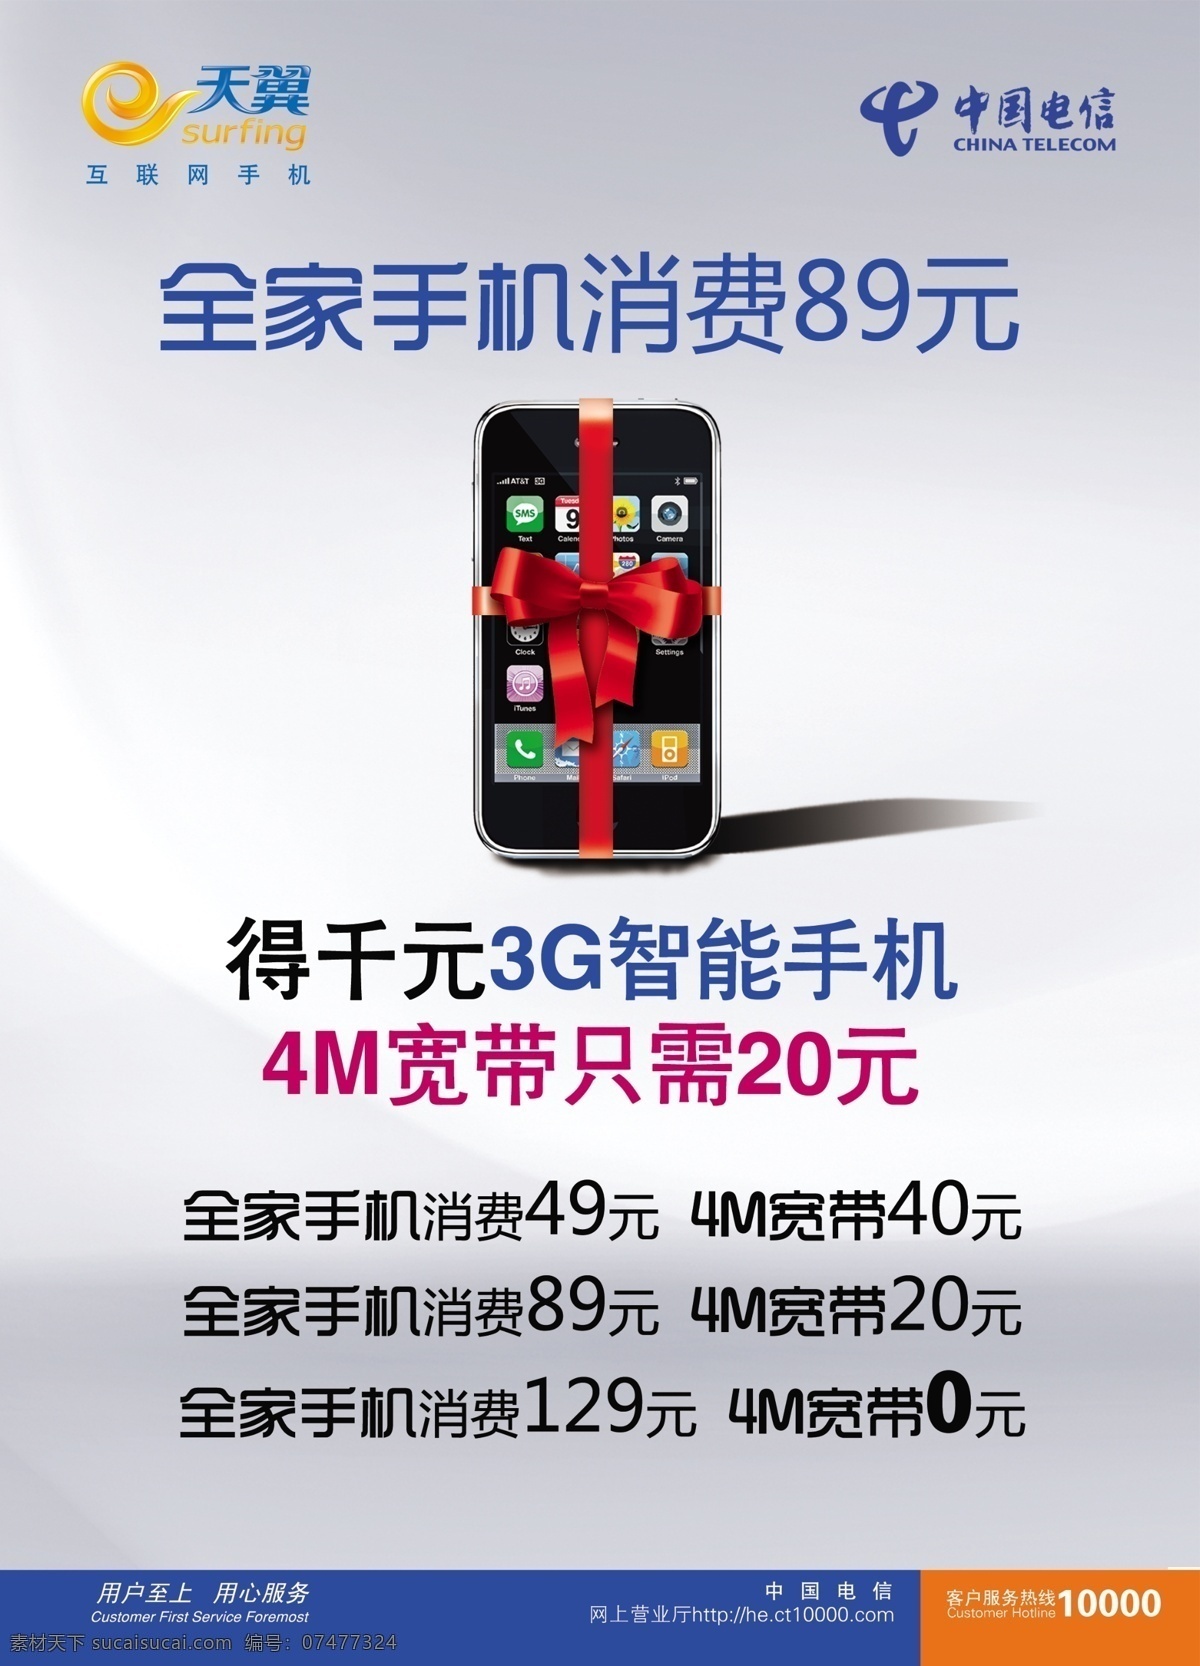 中国电信 广告 广告设计模板 国内广告设计 蝴蝶结 手机 天翼 源文件 中国电信广告 3g智能手机 矢量图 现代科技